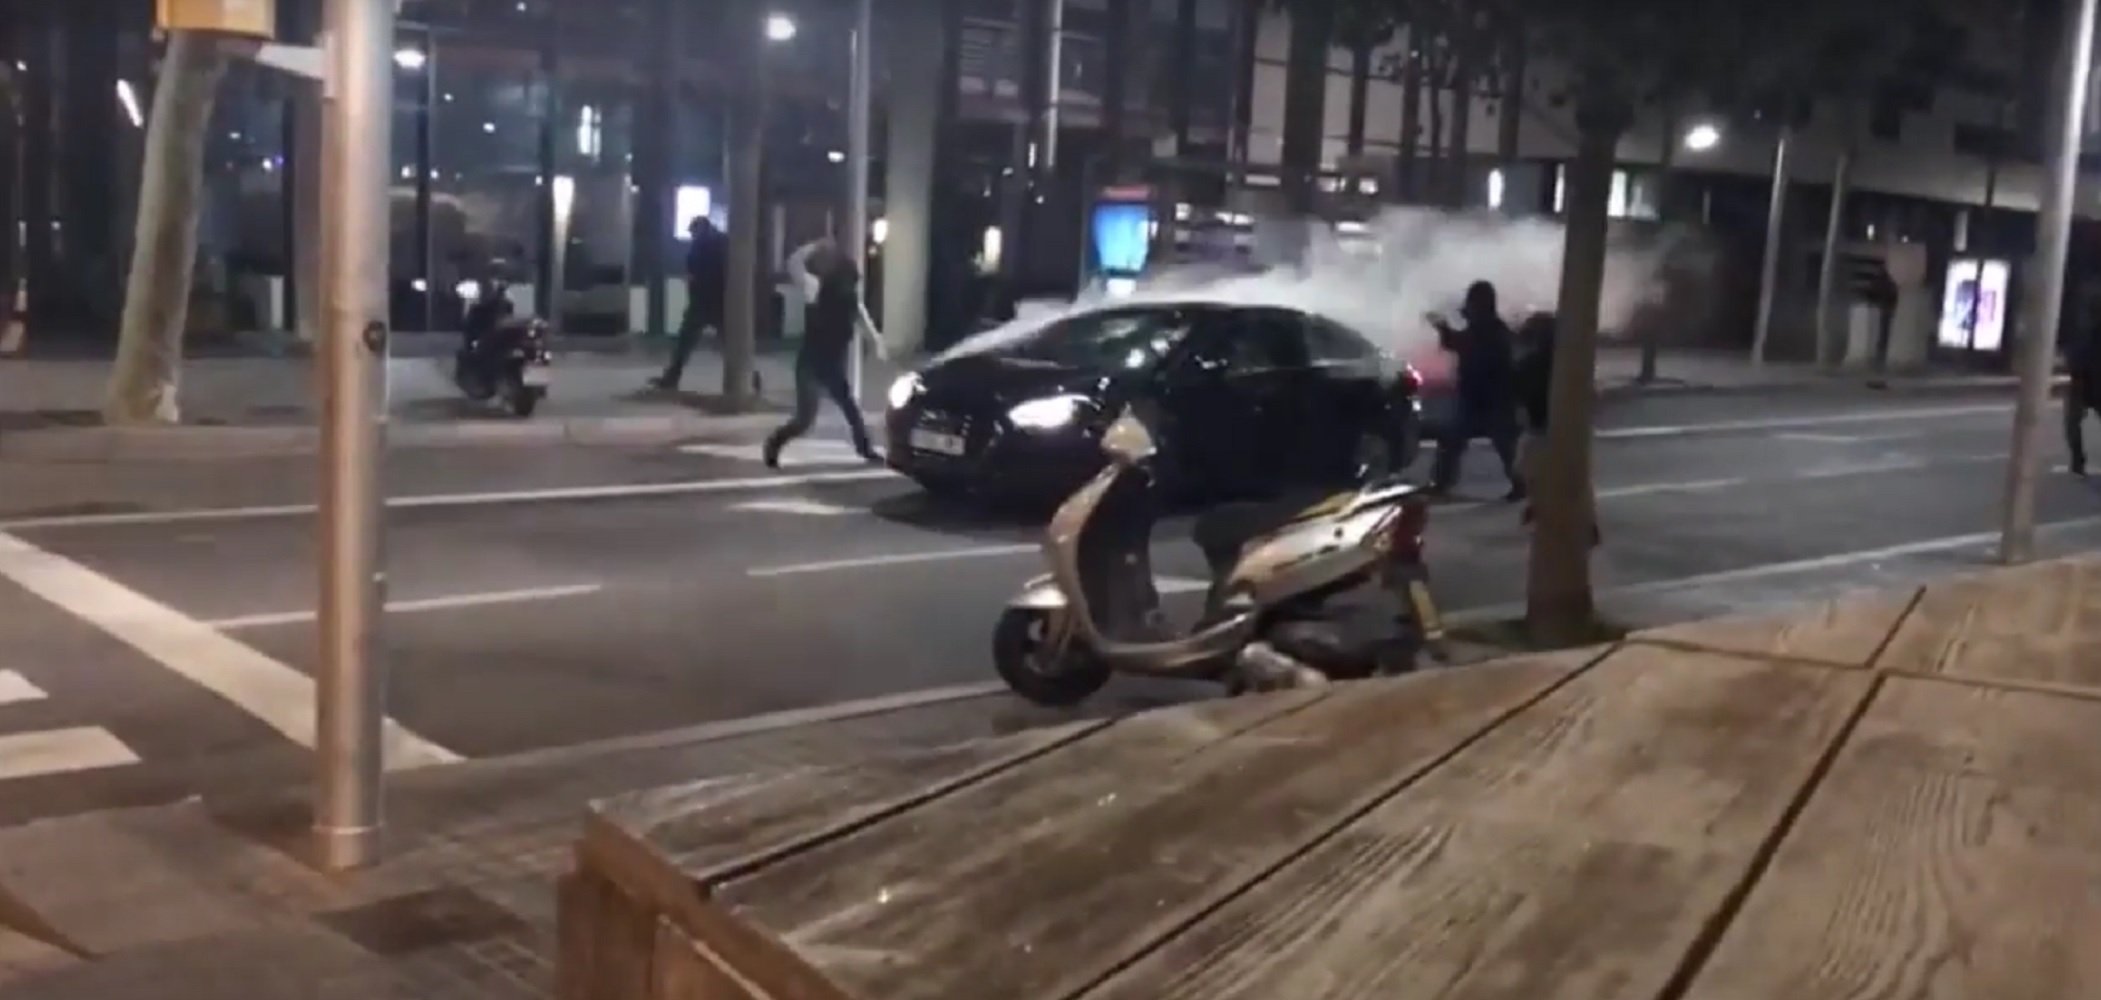 Vídeo: Agressió a un vehicle amb xofer durant el Mobile